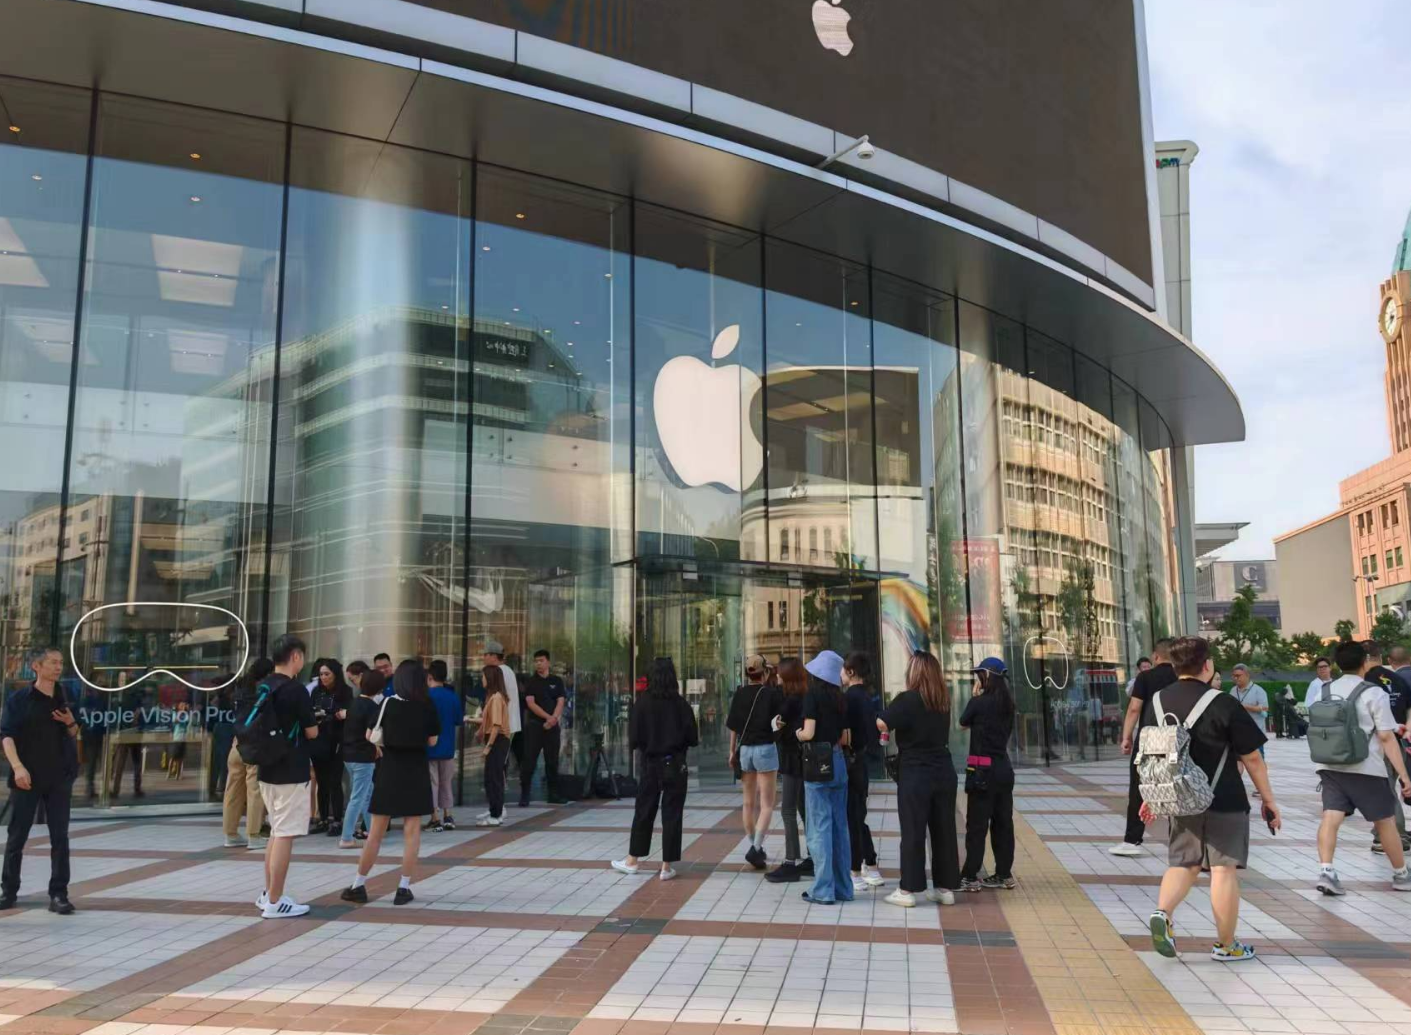 定价近3万的国行版苹果Vision Pro正式开卖，中国为美国本土外首批开卖国家  第1张